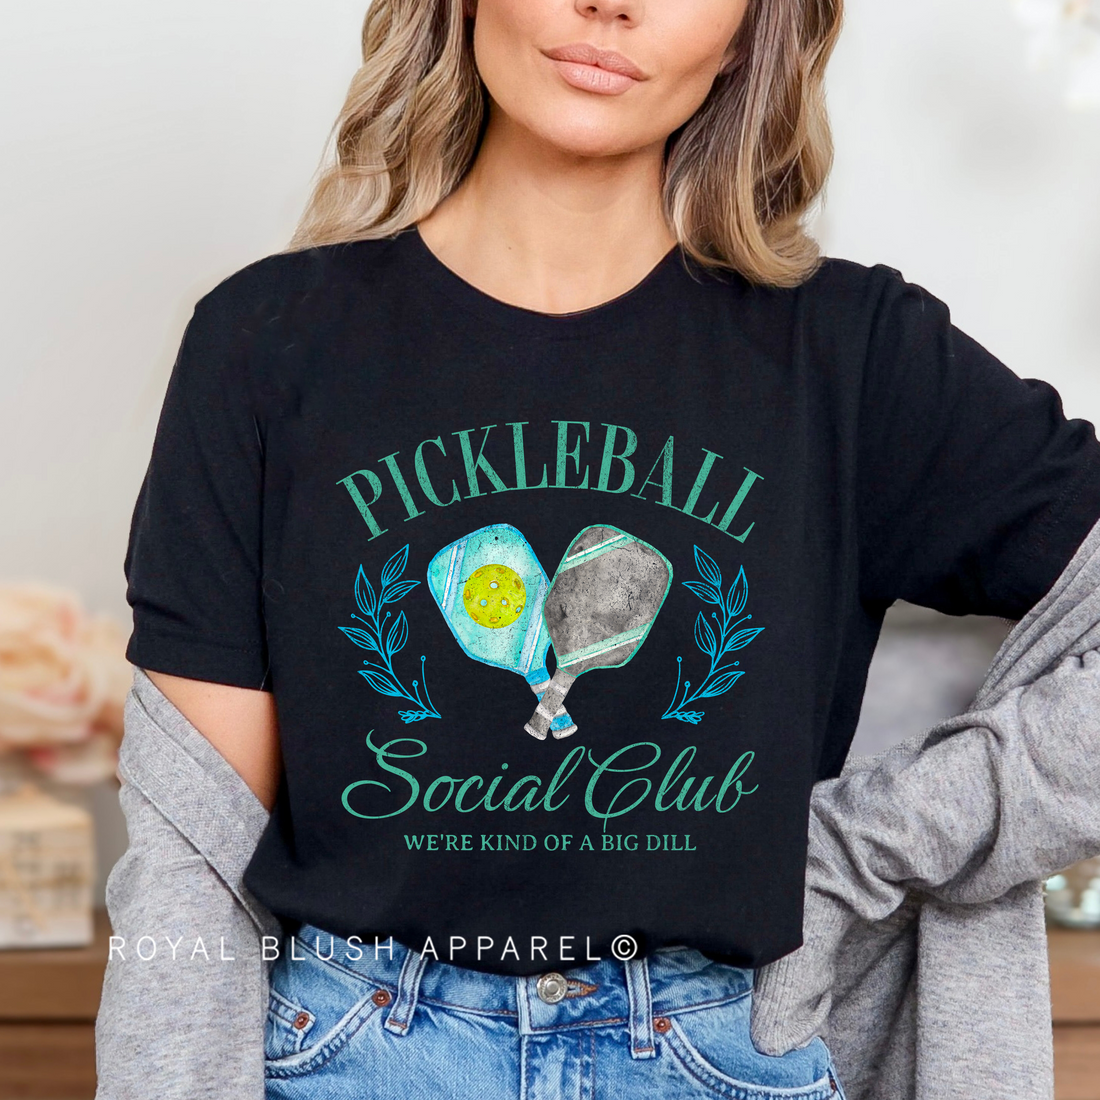 Pickleball Social Club Full Colour Transfer